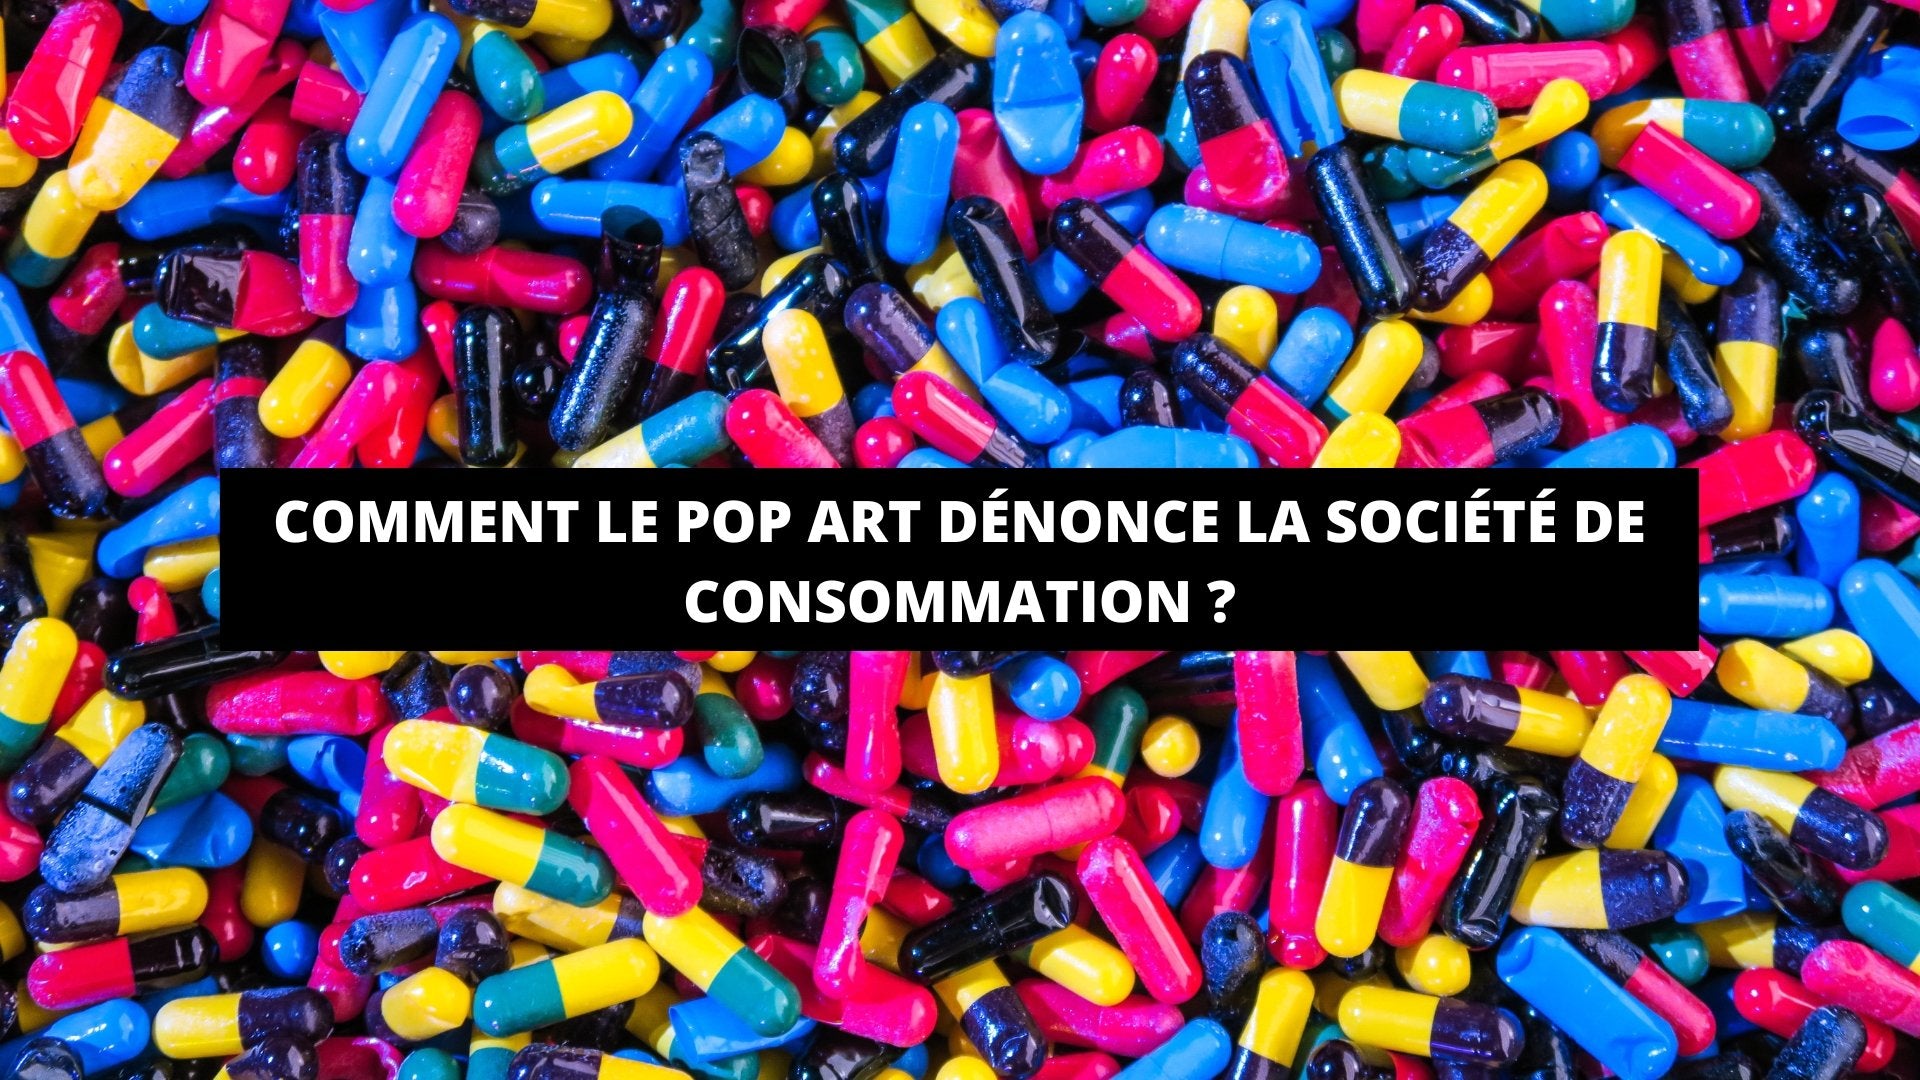 Comment Le Pop Art Dénonce La Société De Consommation ? - The Art Avenue